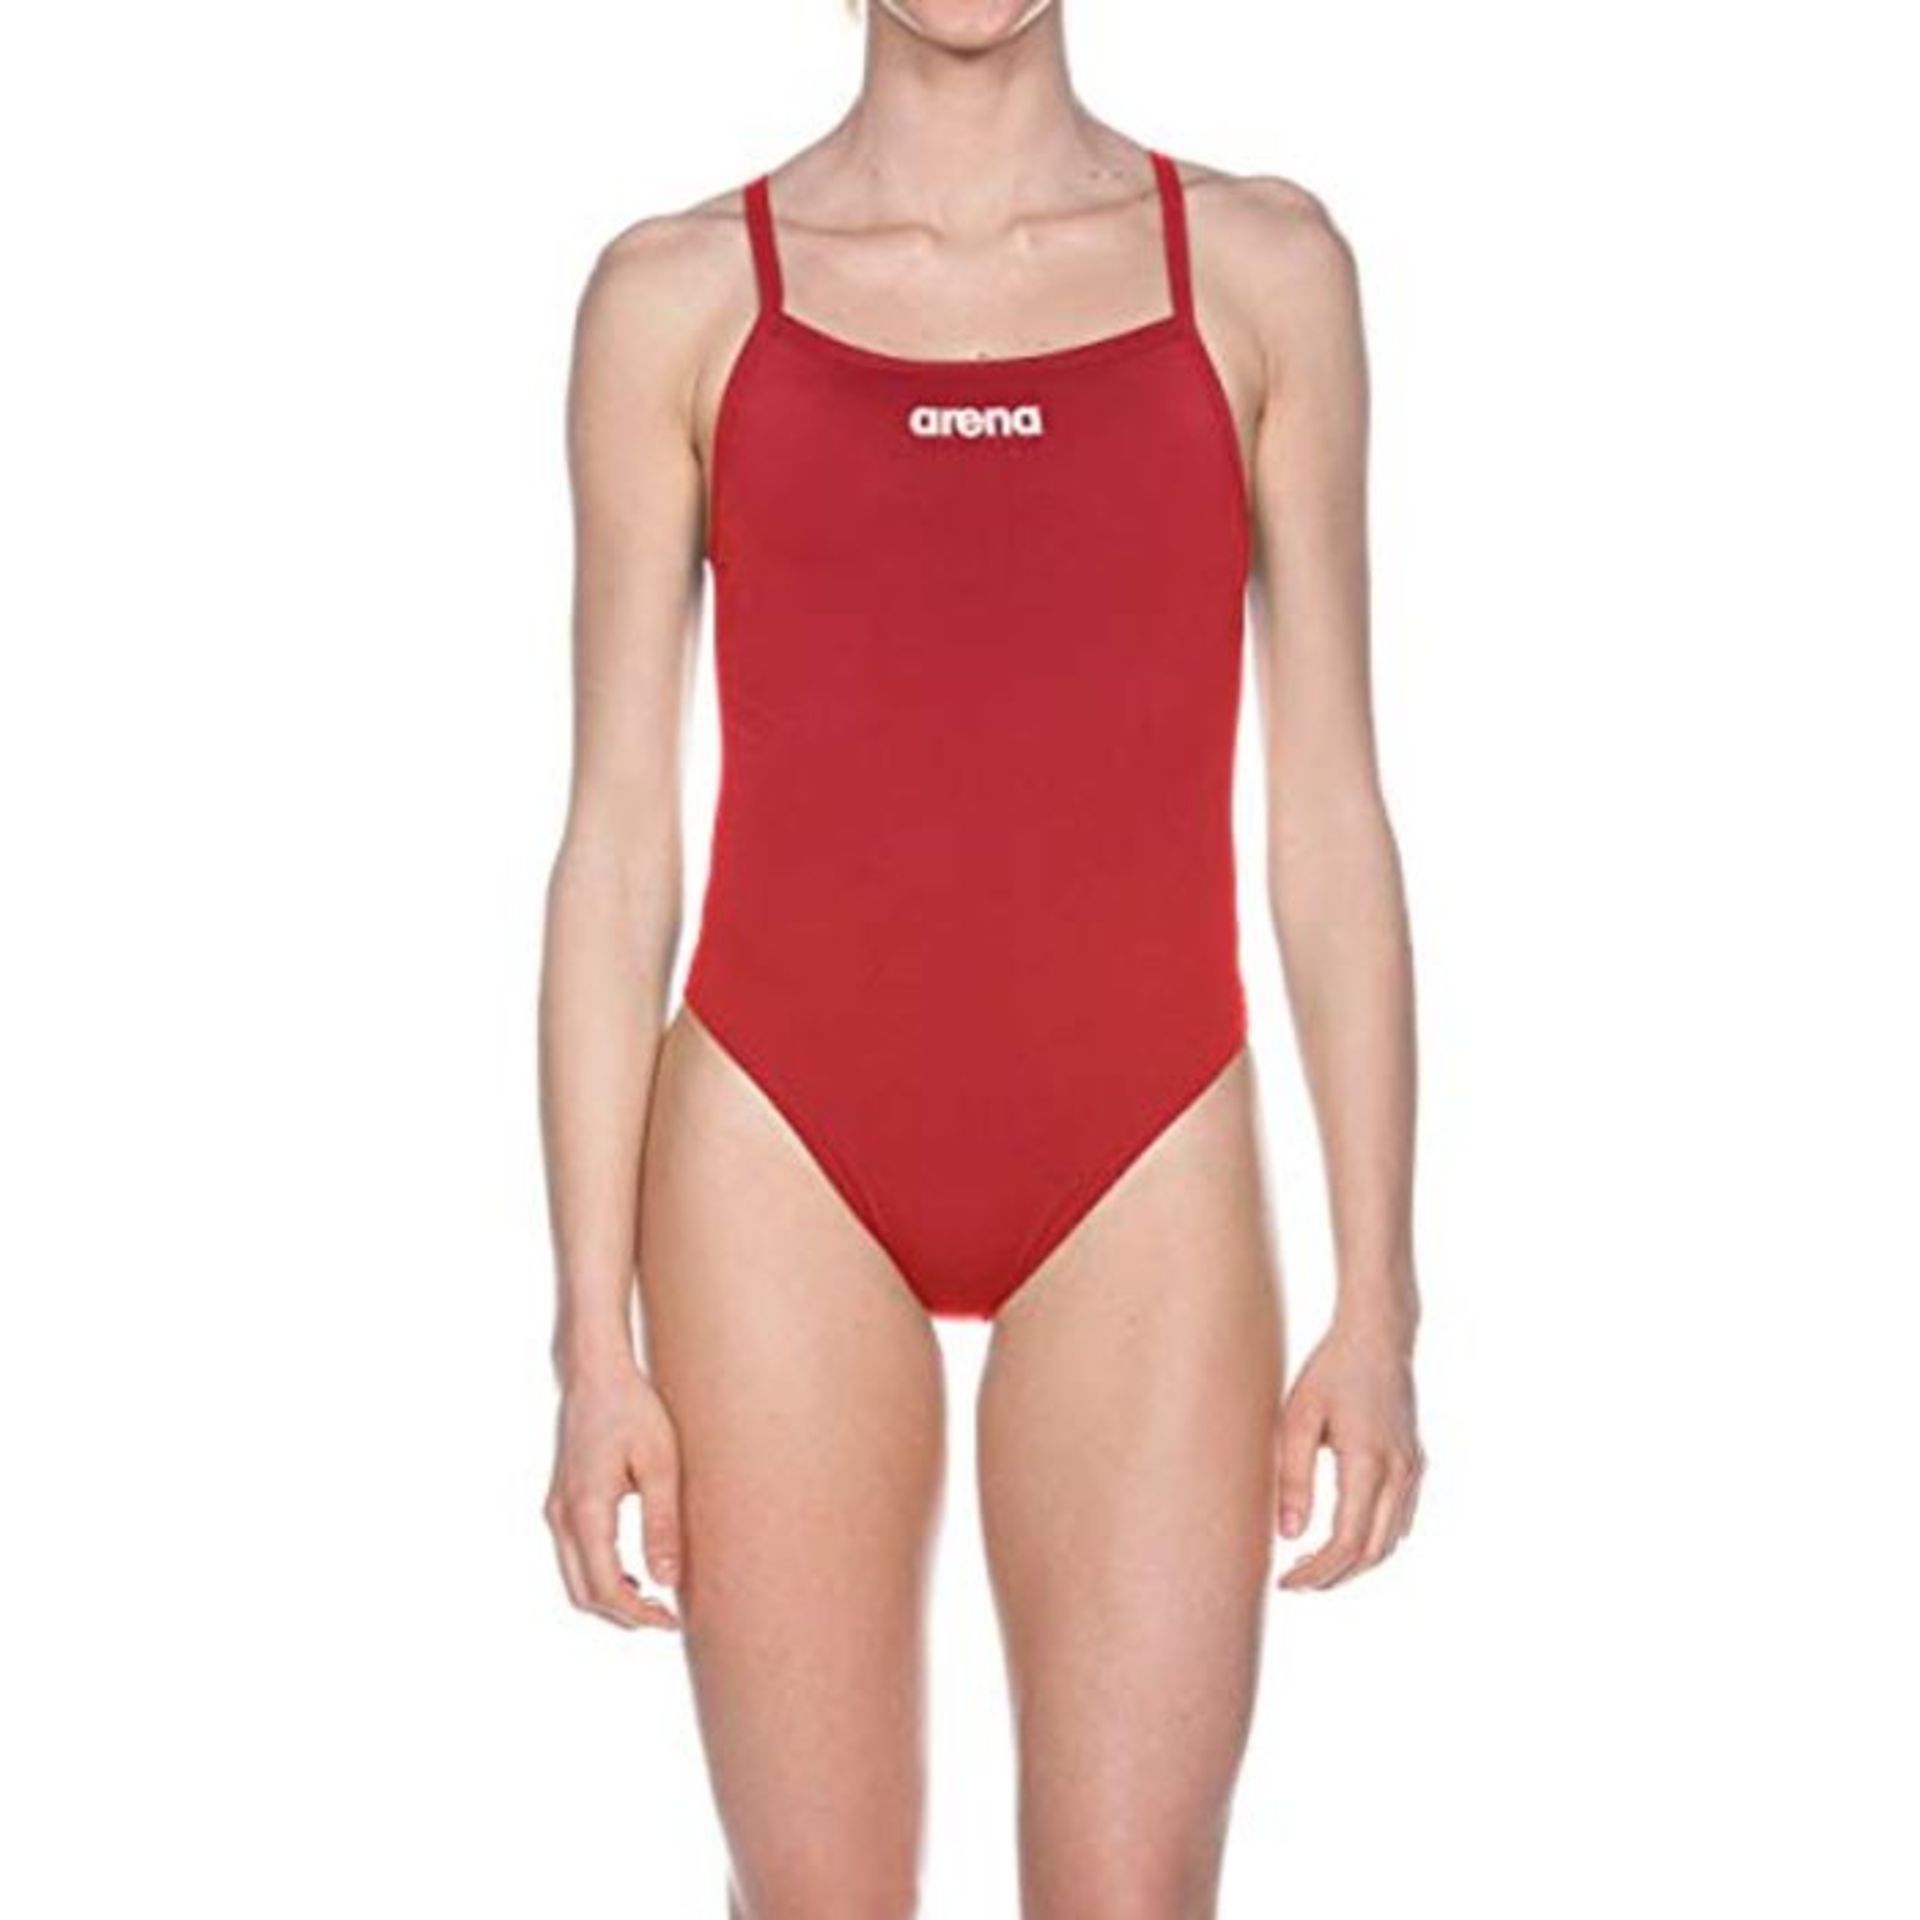 arena Solid Light Tech High Einteiliger Badeanzug Damen, Sport Schwimmanzug aus Chlorb